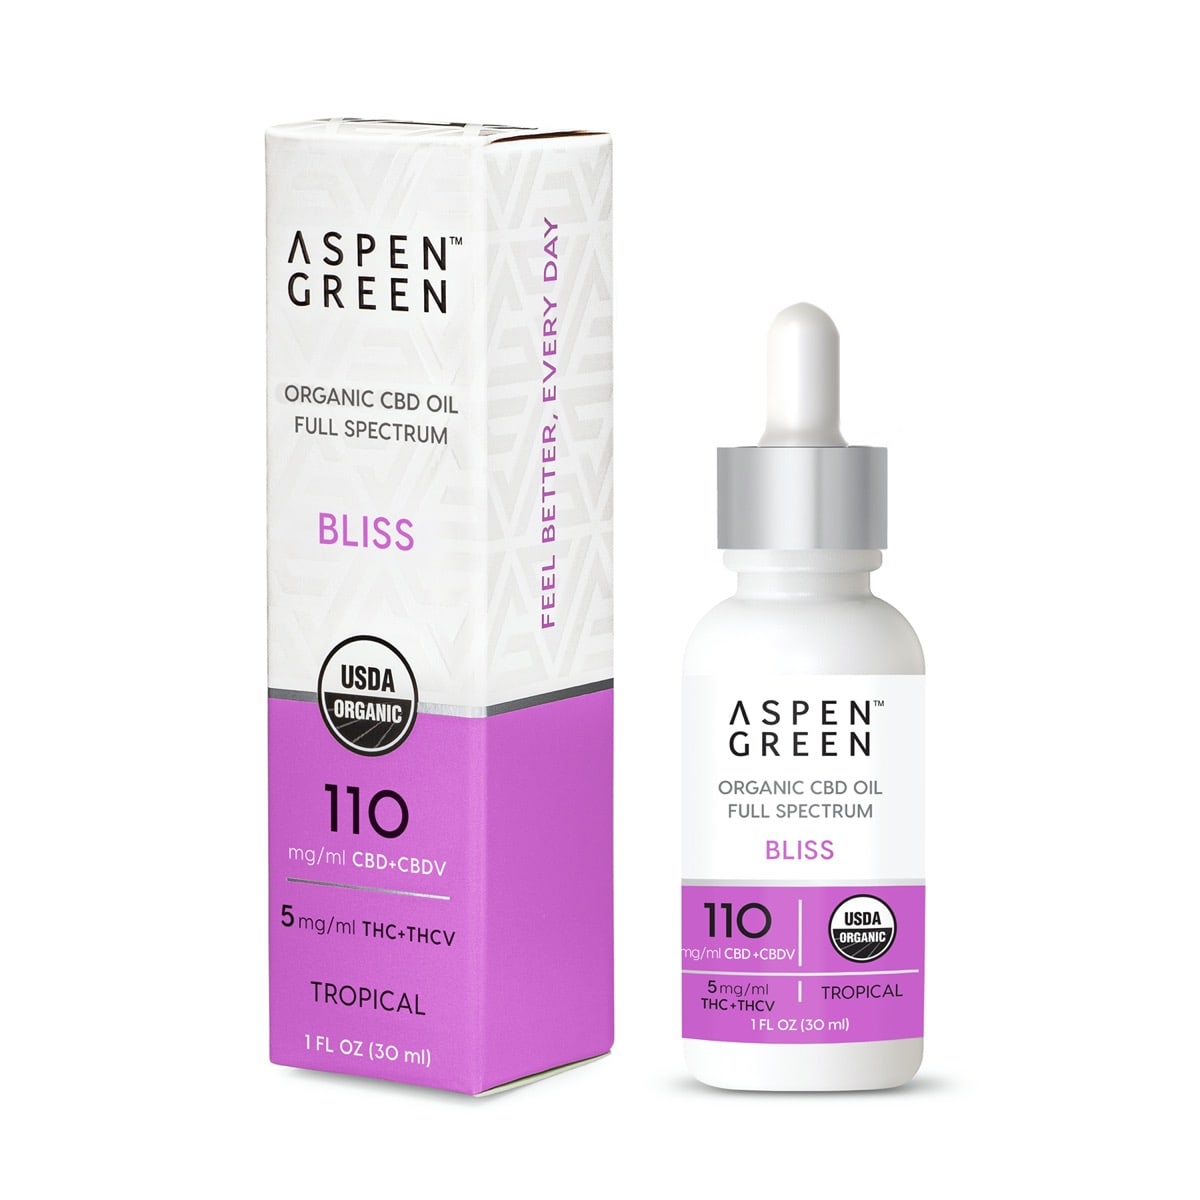 Aspen Green Bliss Organic CBD Oil